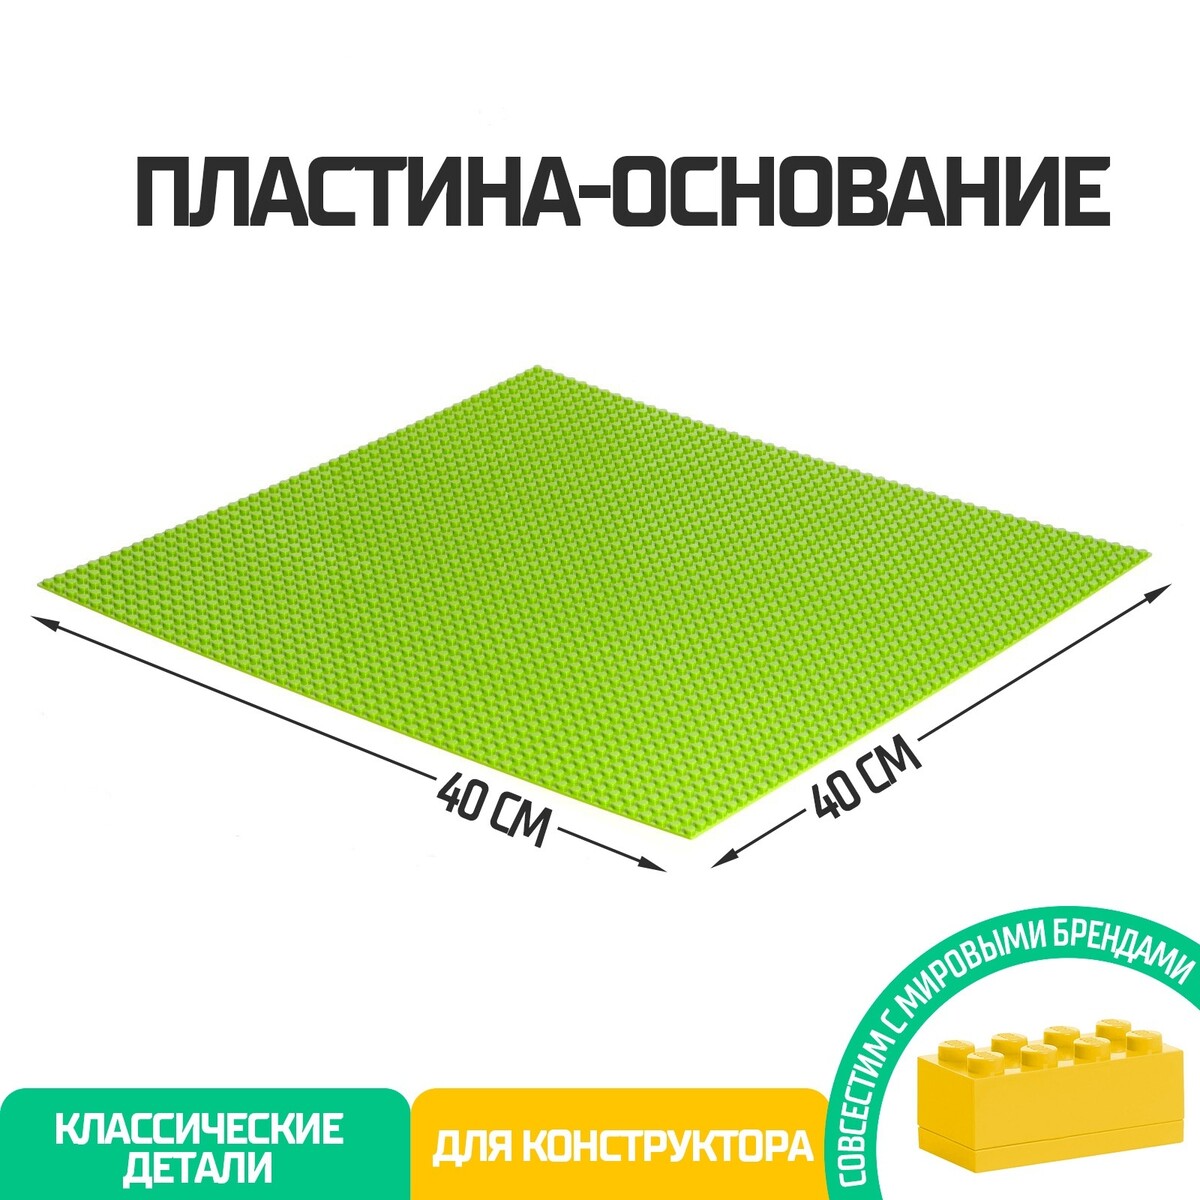 Пластина-основание для конструктора, 40 × 40 см, цвет салатовый пластина основание для конструктора 38 4 × 38 4 см салатовый